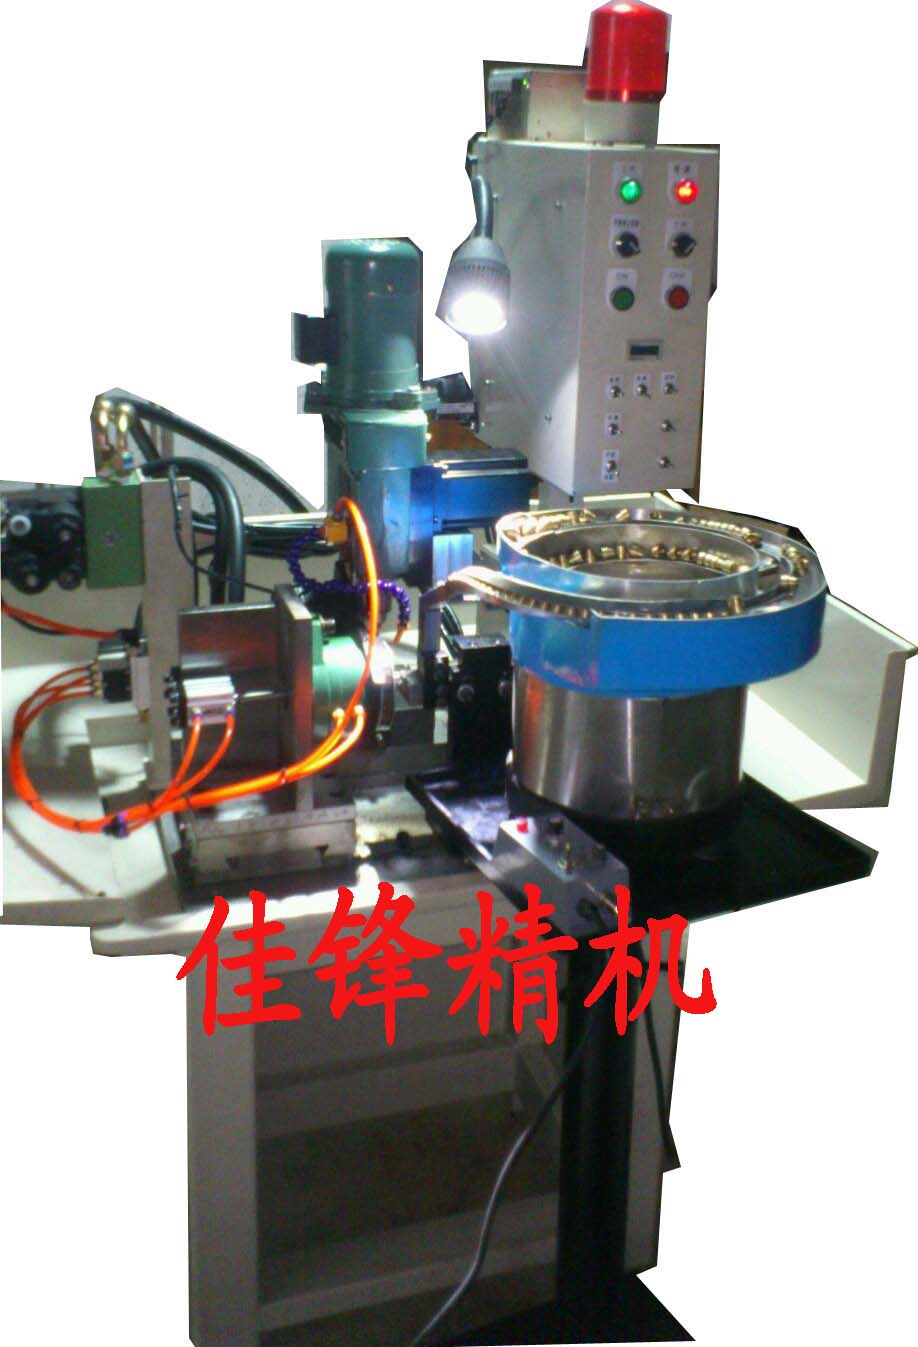 自动钻孔机,全自动钻孔机,主要用于自动车床后续的加工及生产